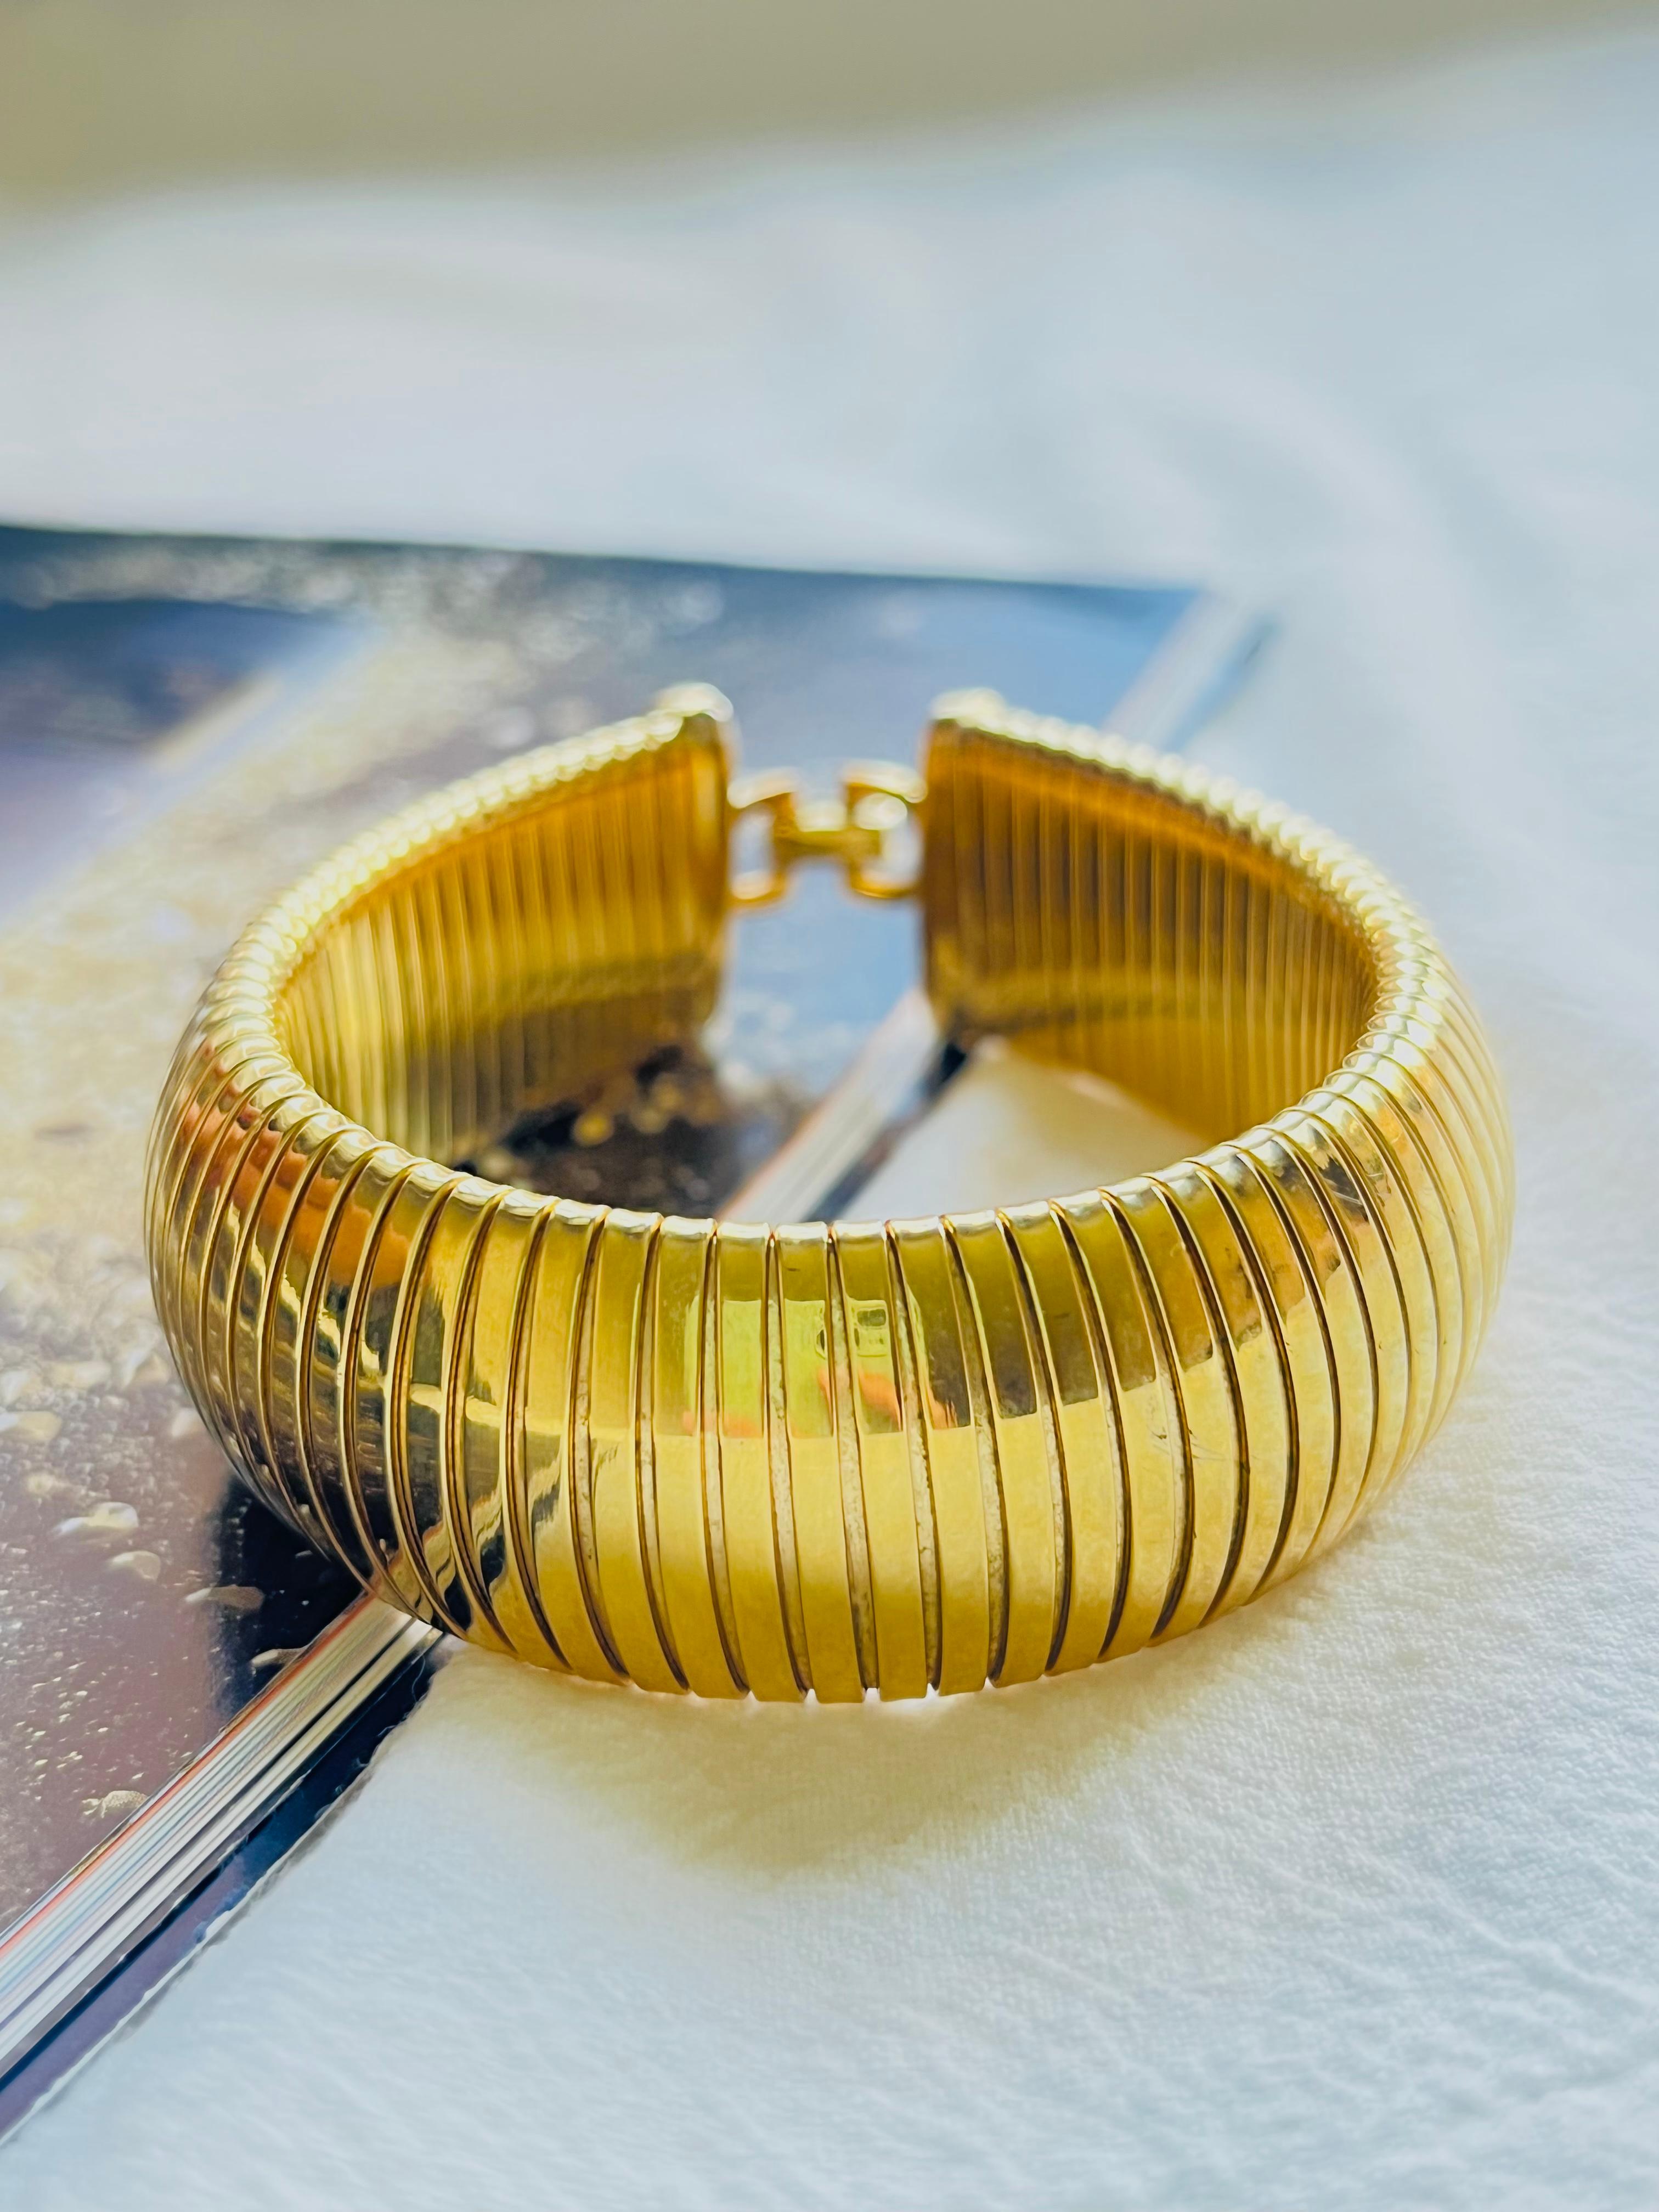 Christian Dior Vintage 1980 Unisexe Bracelet manchette serpent oméga extra large et côtelé, ton or

Très bon état. Légères rayures ou perte de couleur, à peine perceptibles. 100% authentique.

Confectionné en plaqué or poli avec un design